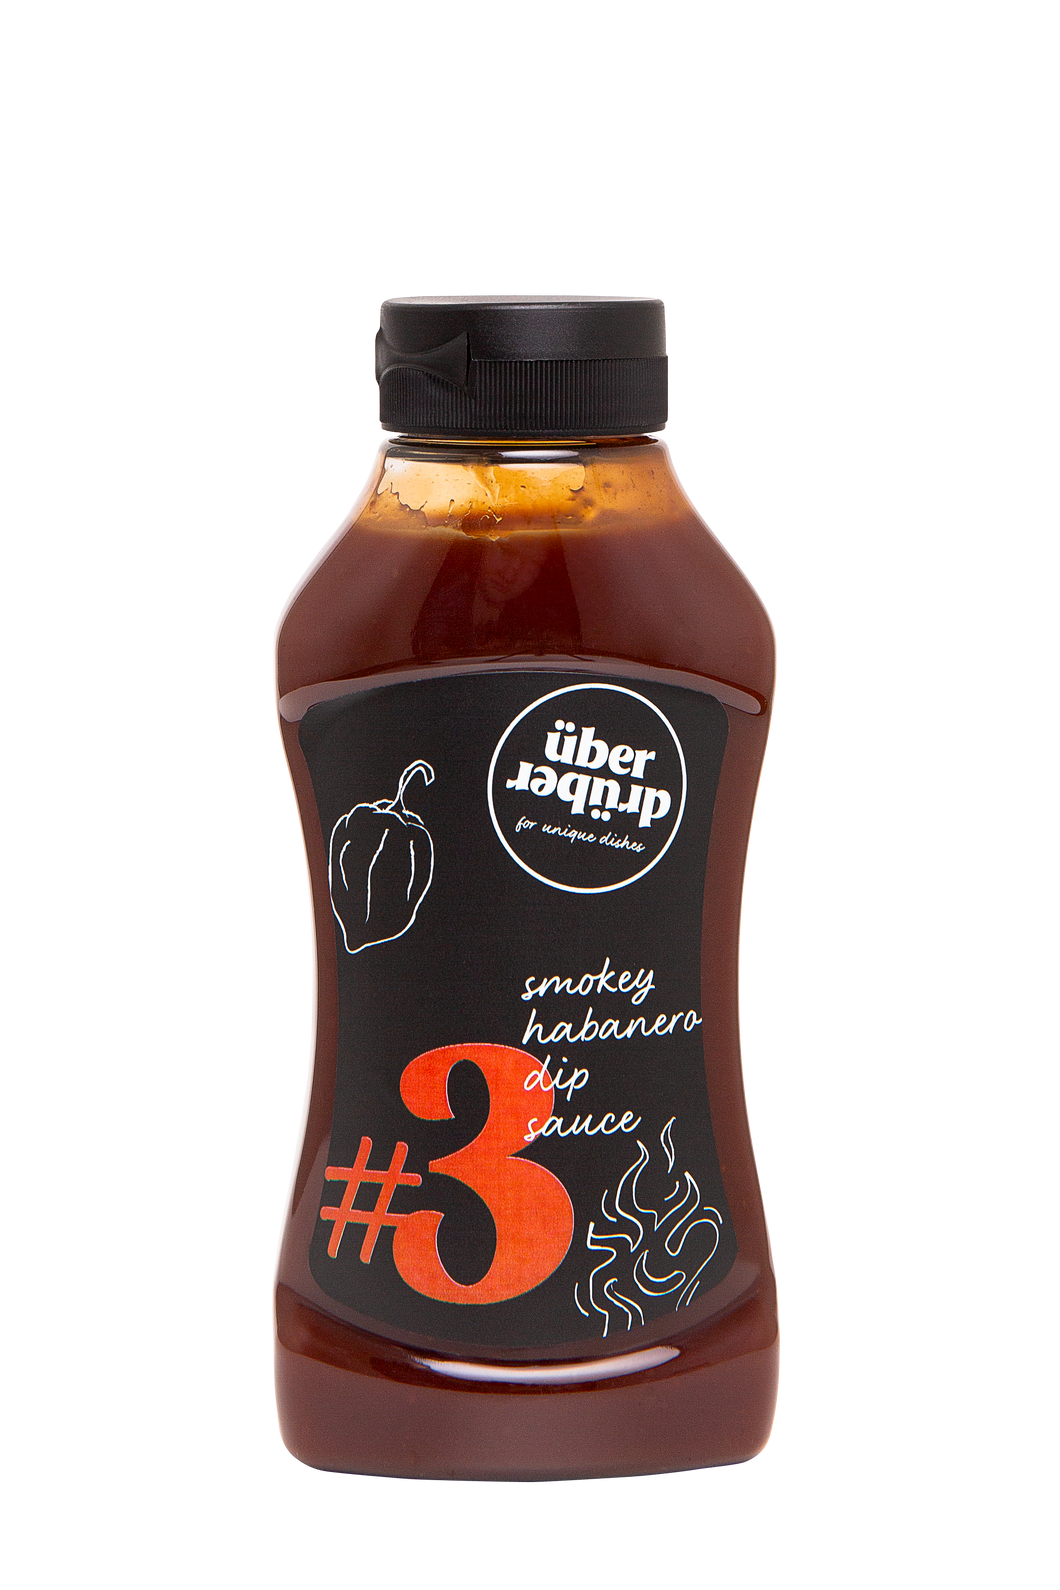 Smokey Habanero dip Sauce #3